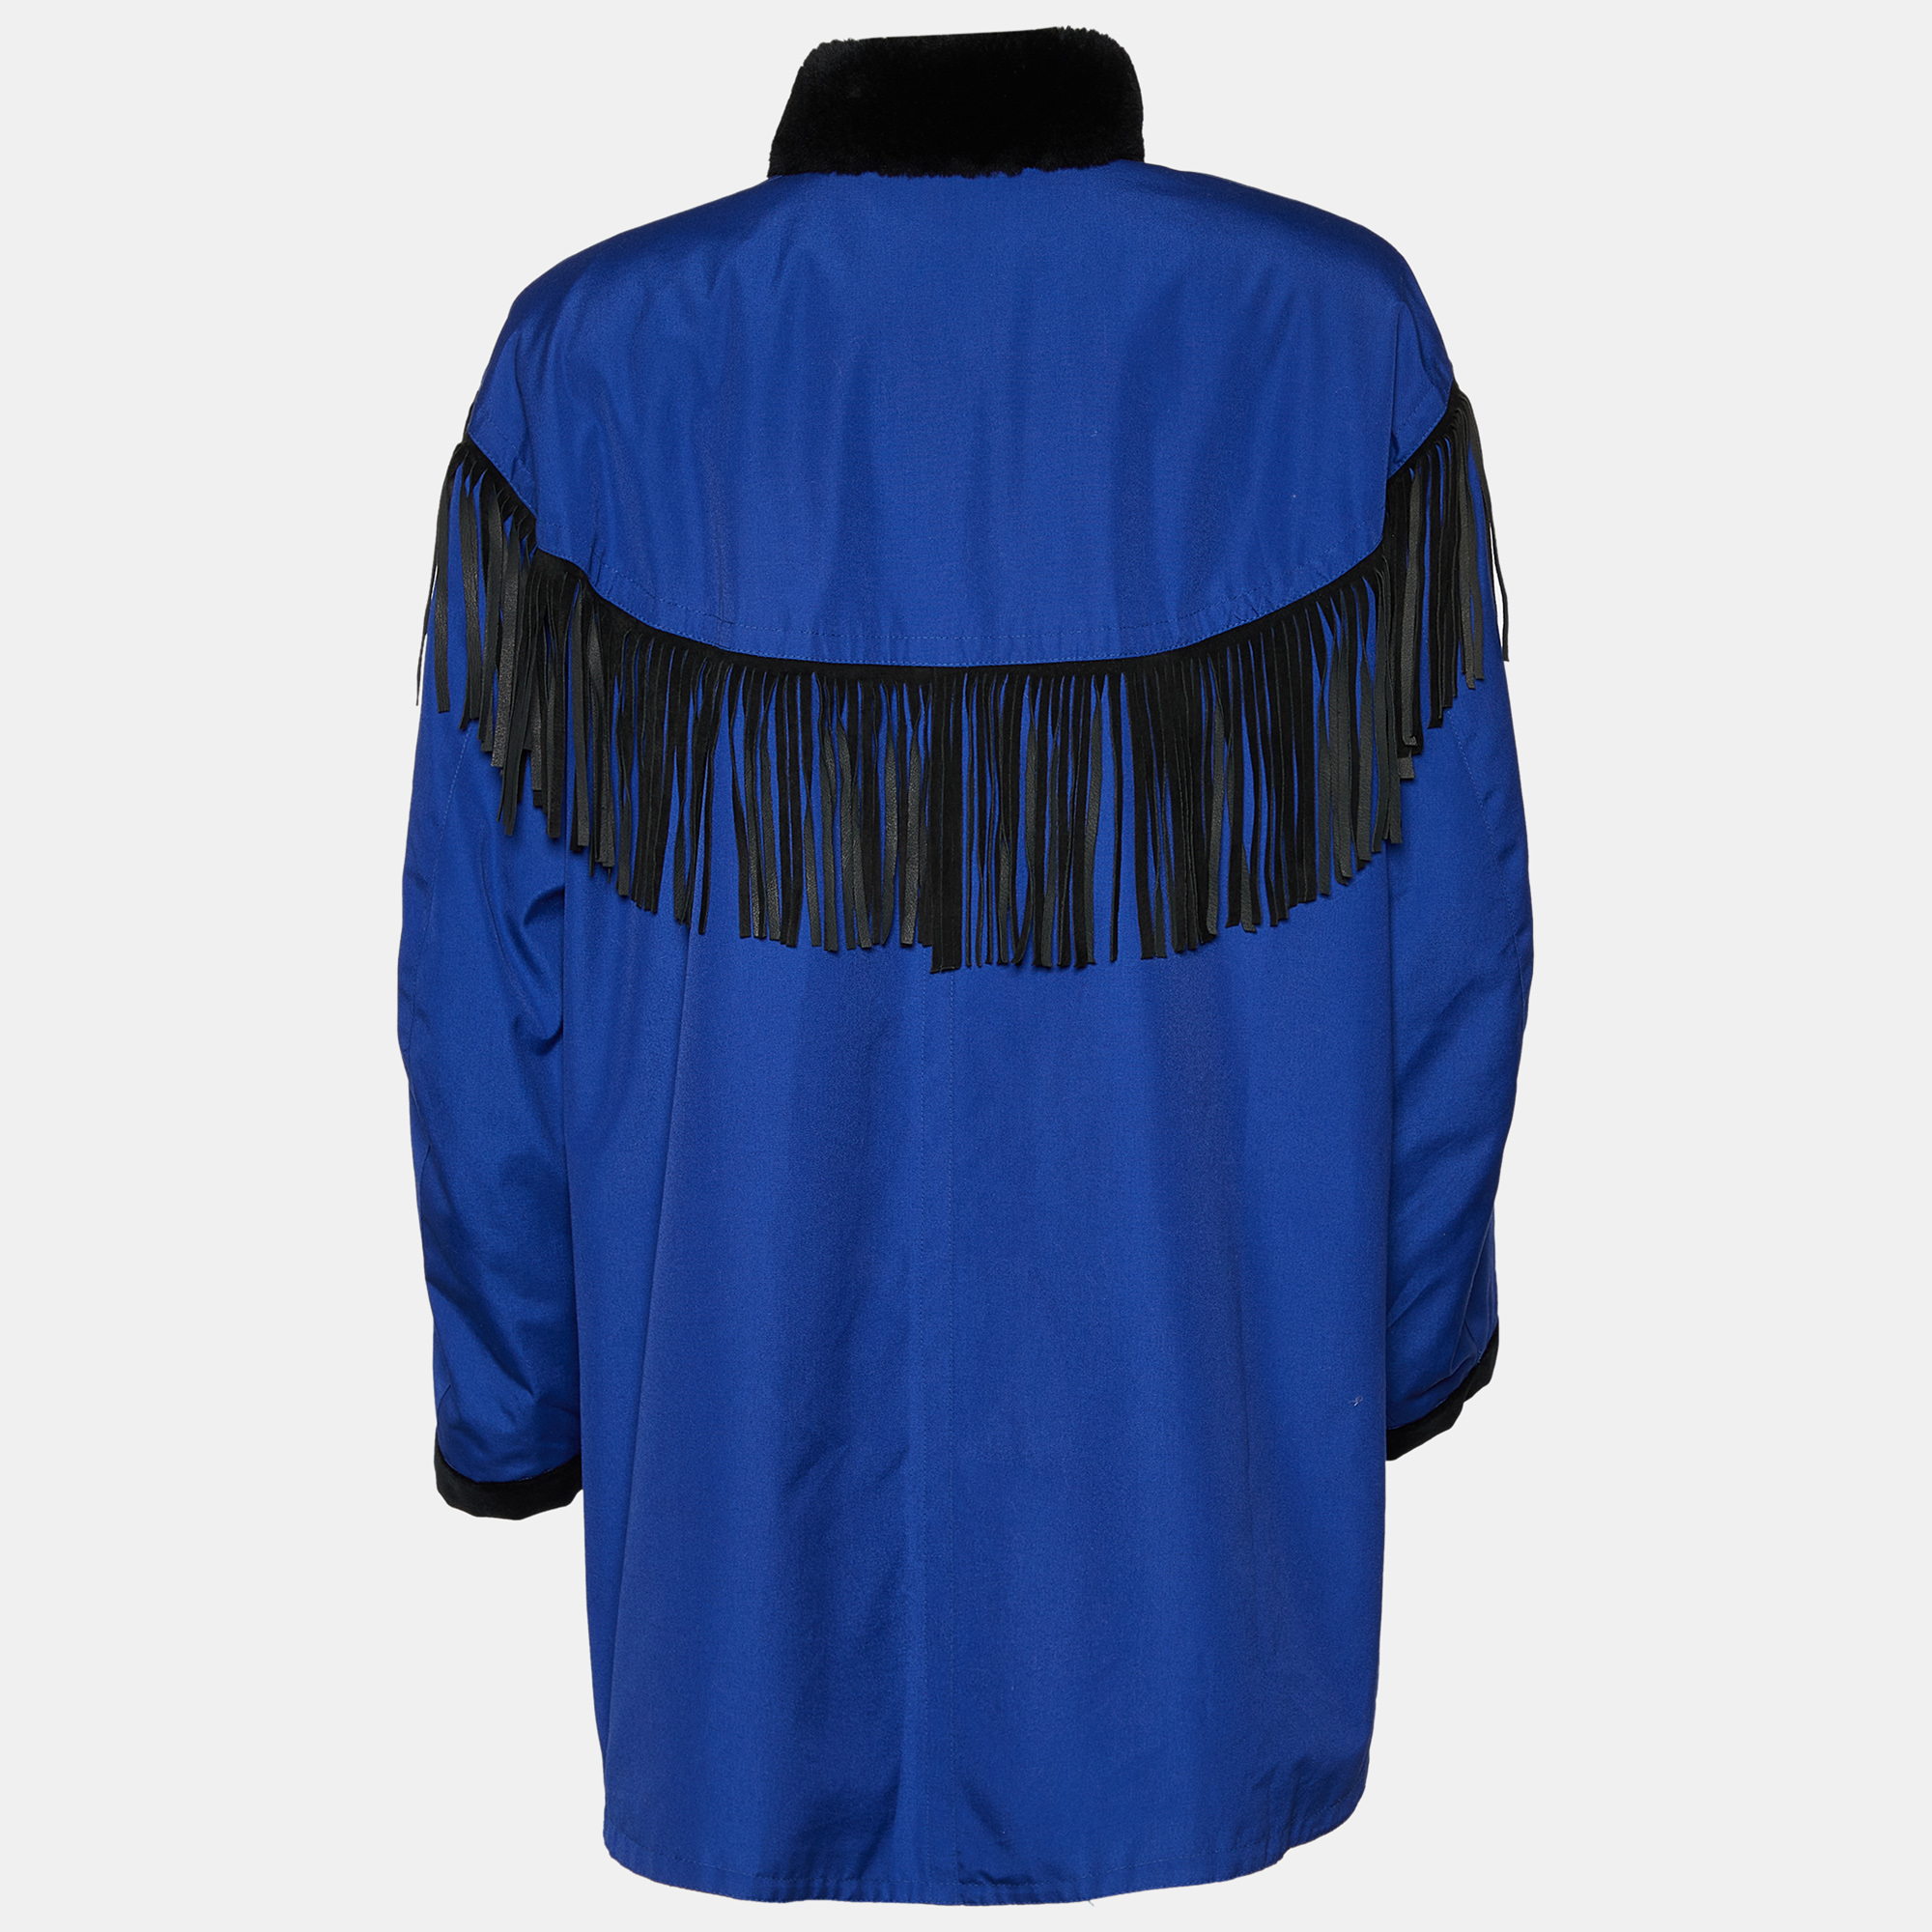 

Yves Saint Laurent Furrures Blue Cotton Fur Lined Button Front Jacket